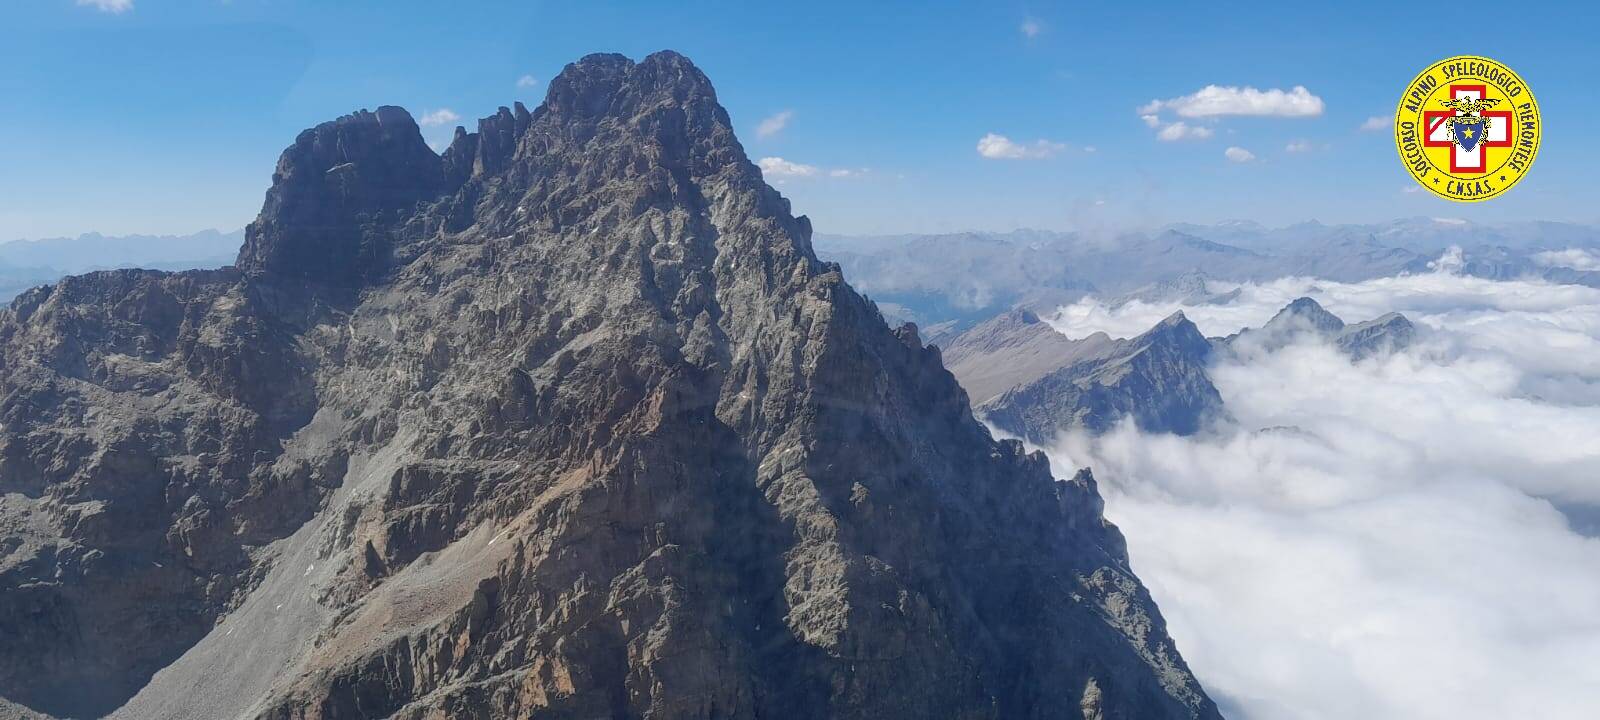 Alpinista si infortuna sulla via normale del Monviso